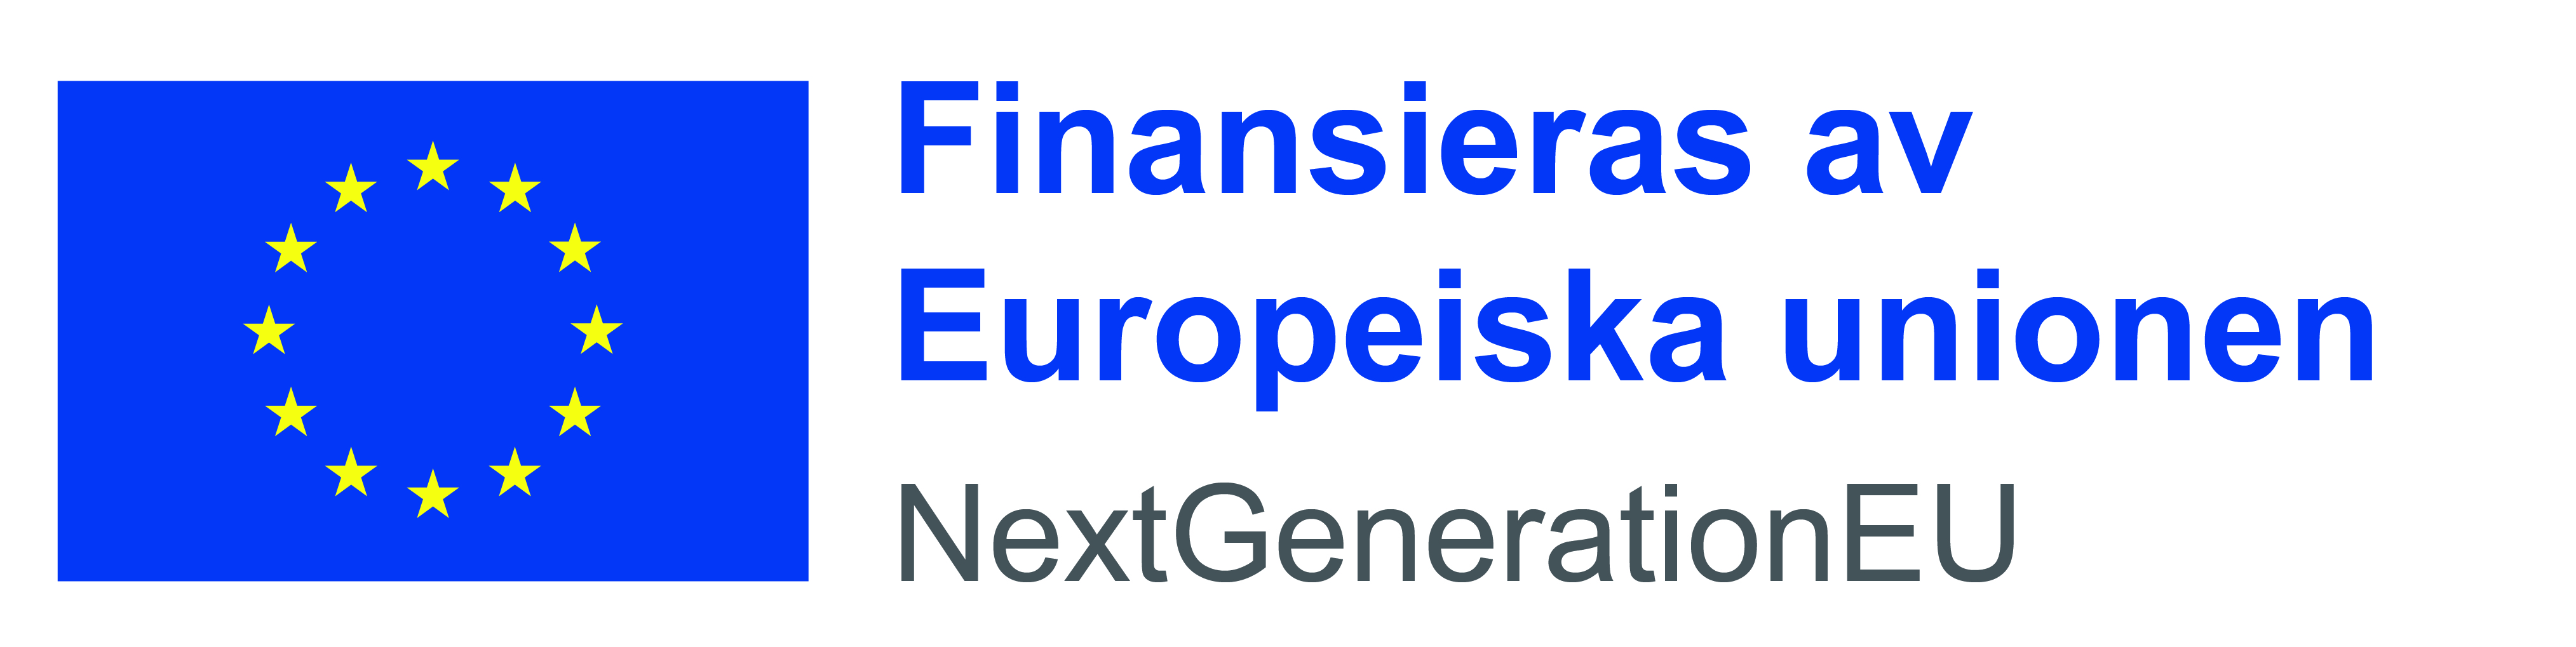 Finansieras av EU Next Generation (logotyp)